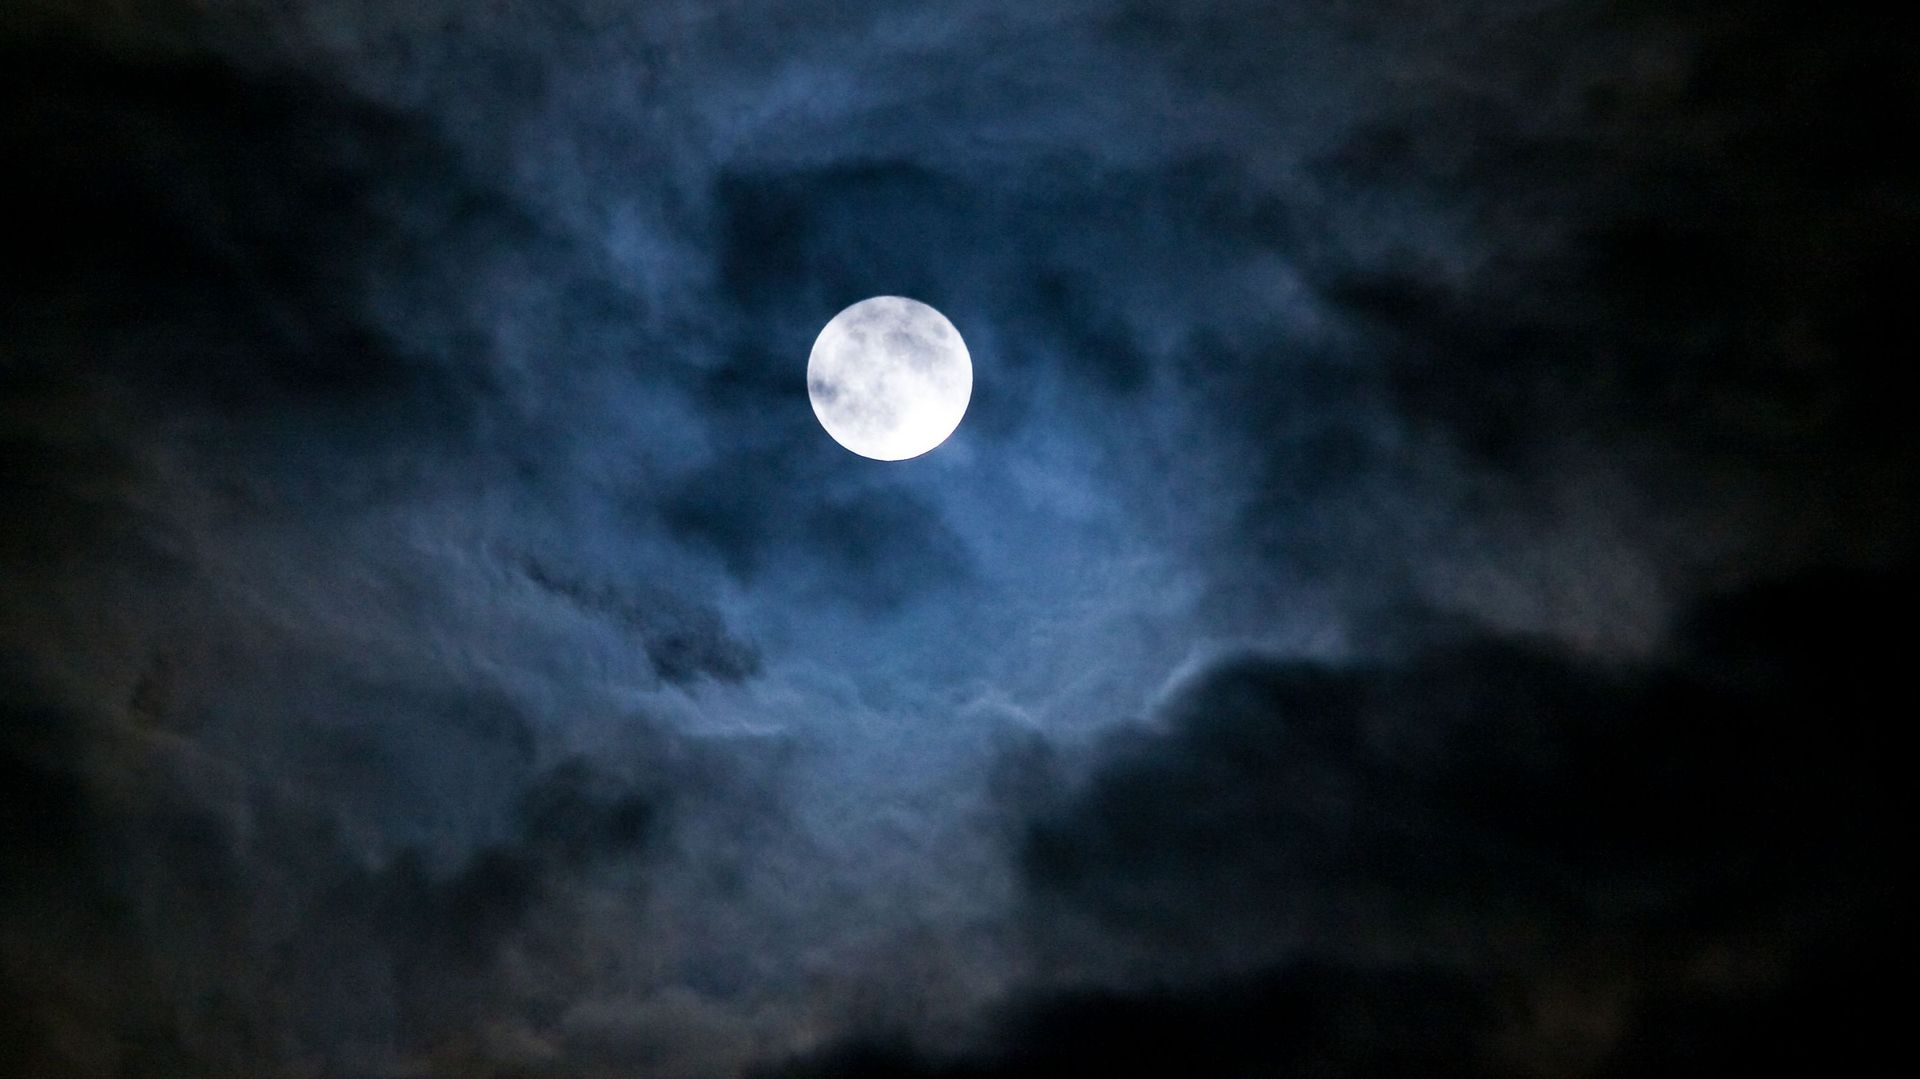 Les phases de la Lune auraient une influence sur votre sommeil, selon une étude